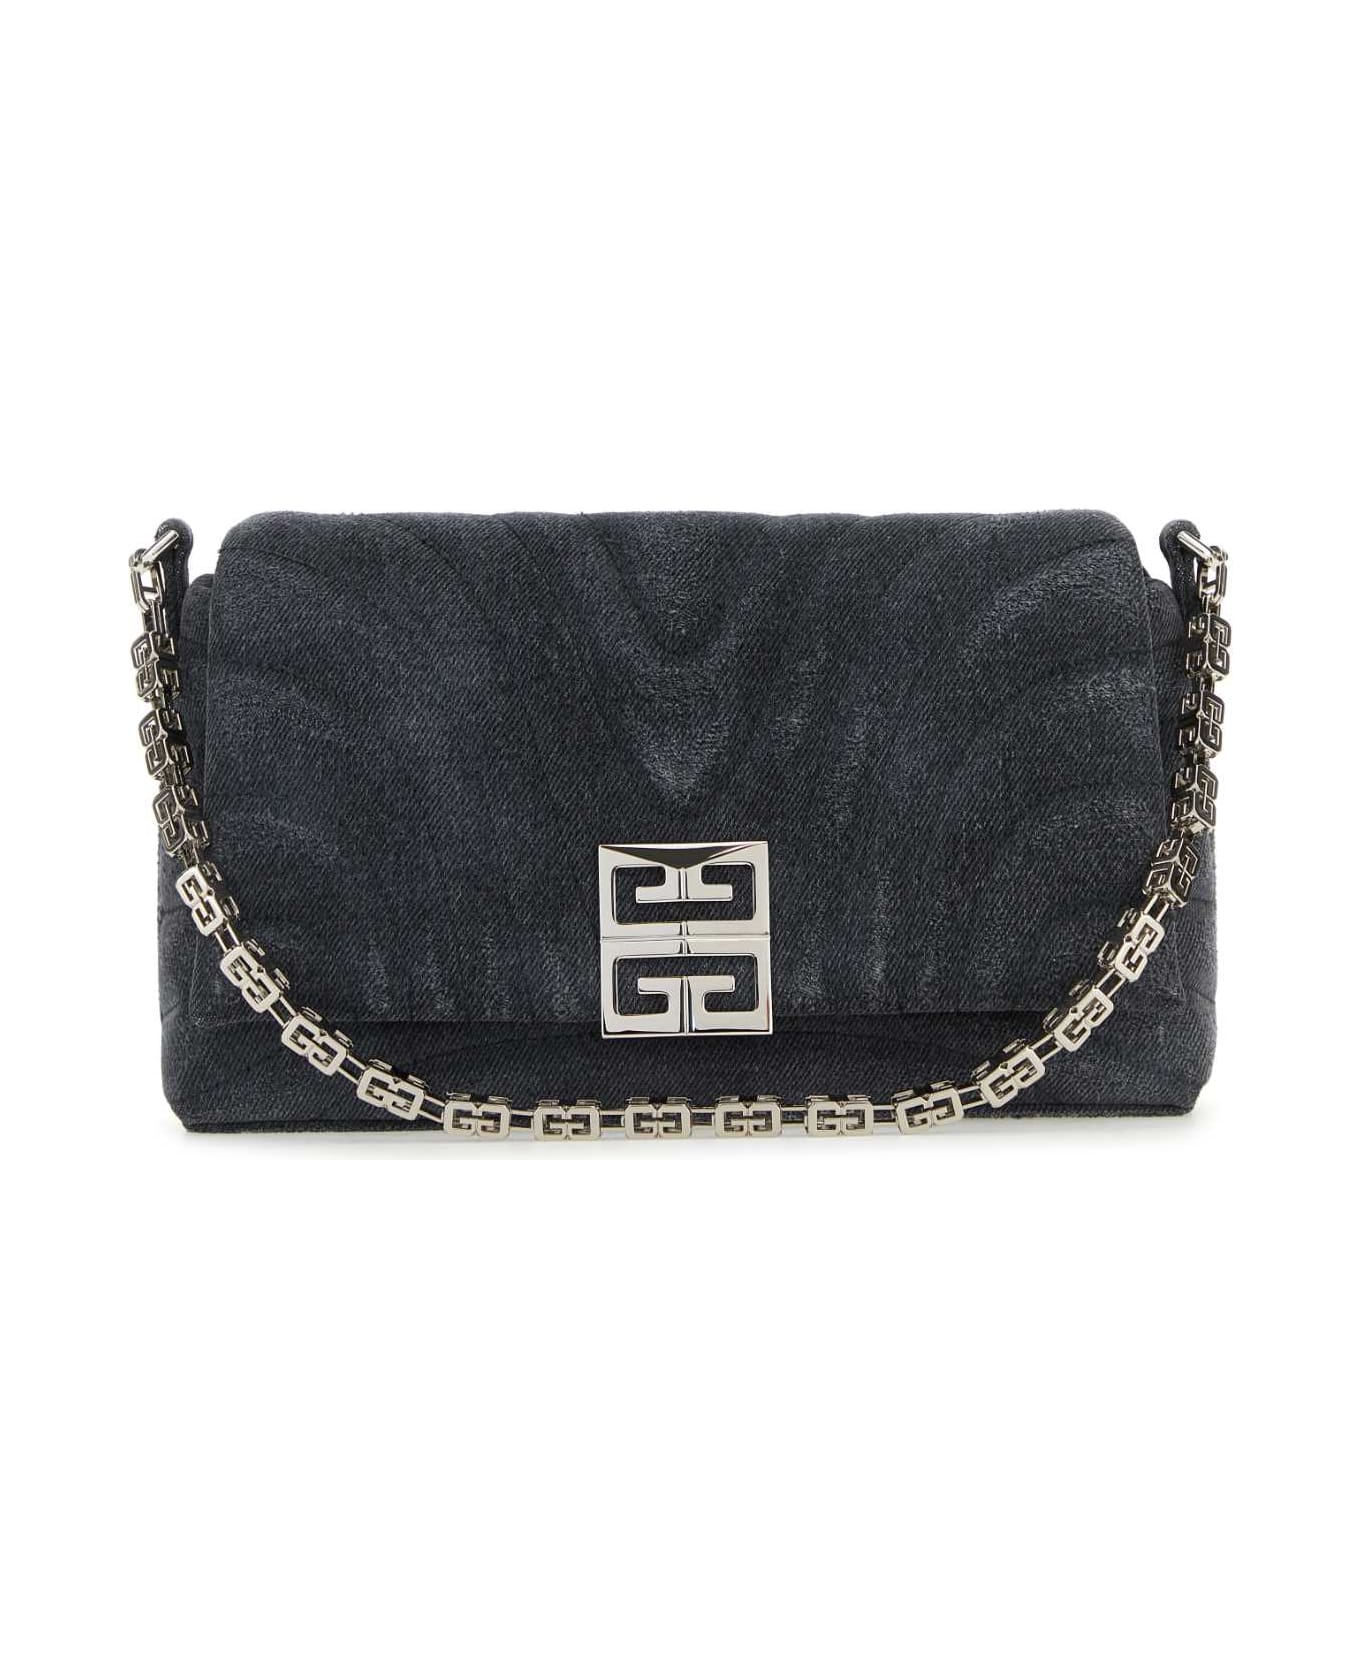 Givenchy Black Denim Medium 4g Soft Handbag - BLACK ショルダーバッグ